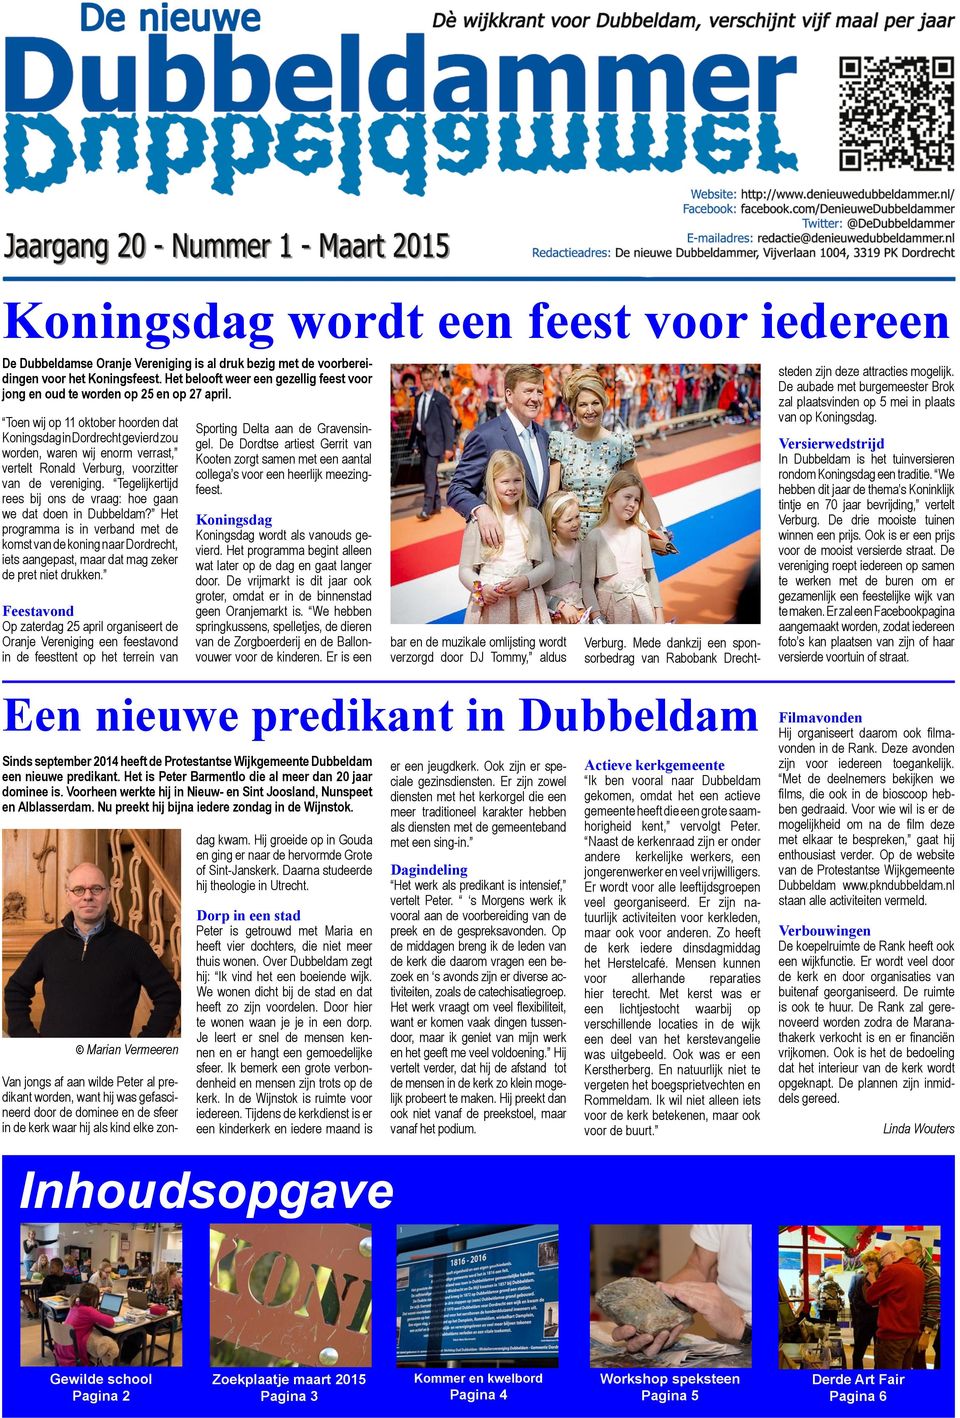 Toen wij op 11 oktober hoorden dat Koningsdag in Dordrecht gevierd zou worden, waren wij enorm verrast, vertelt Ronald Verburg, voorzitter van de vereniging.